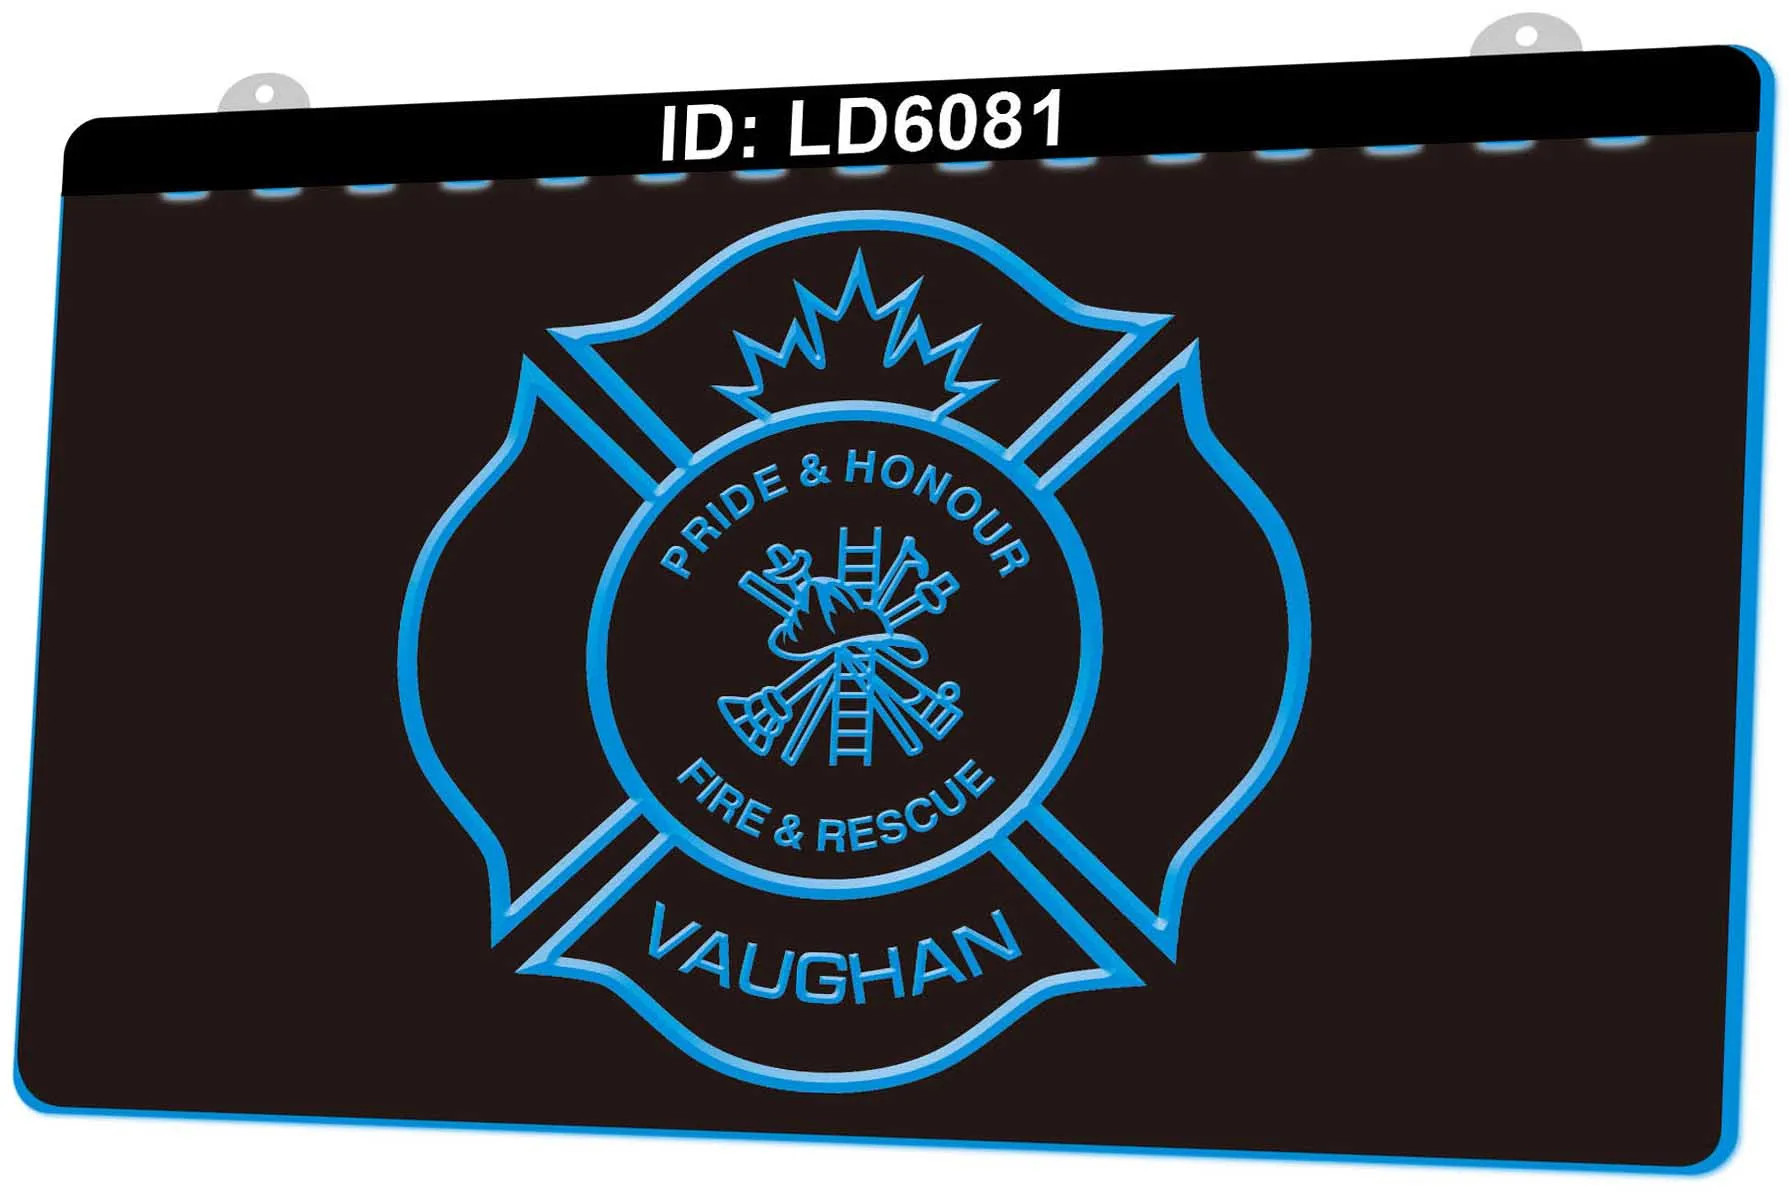 LD6081 Pride Honor Fire Rescue Vaughan Gravure 3D Signe lumineux LED Vente en gros au détail